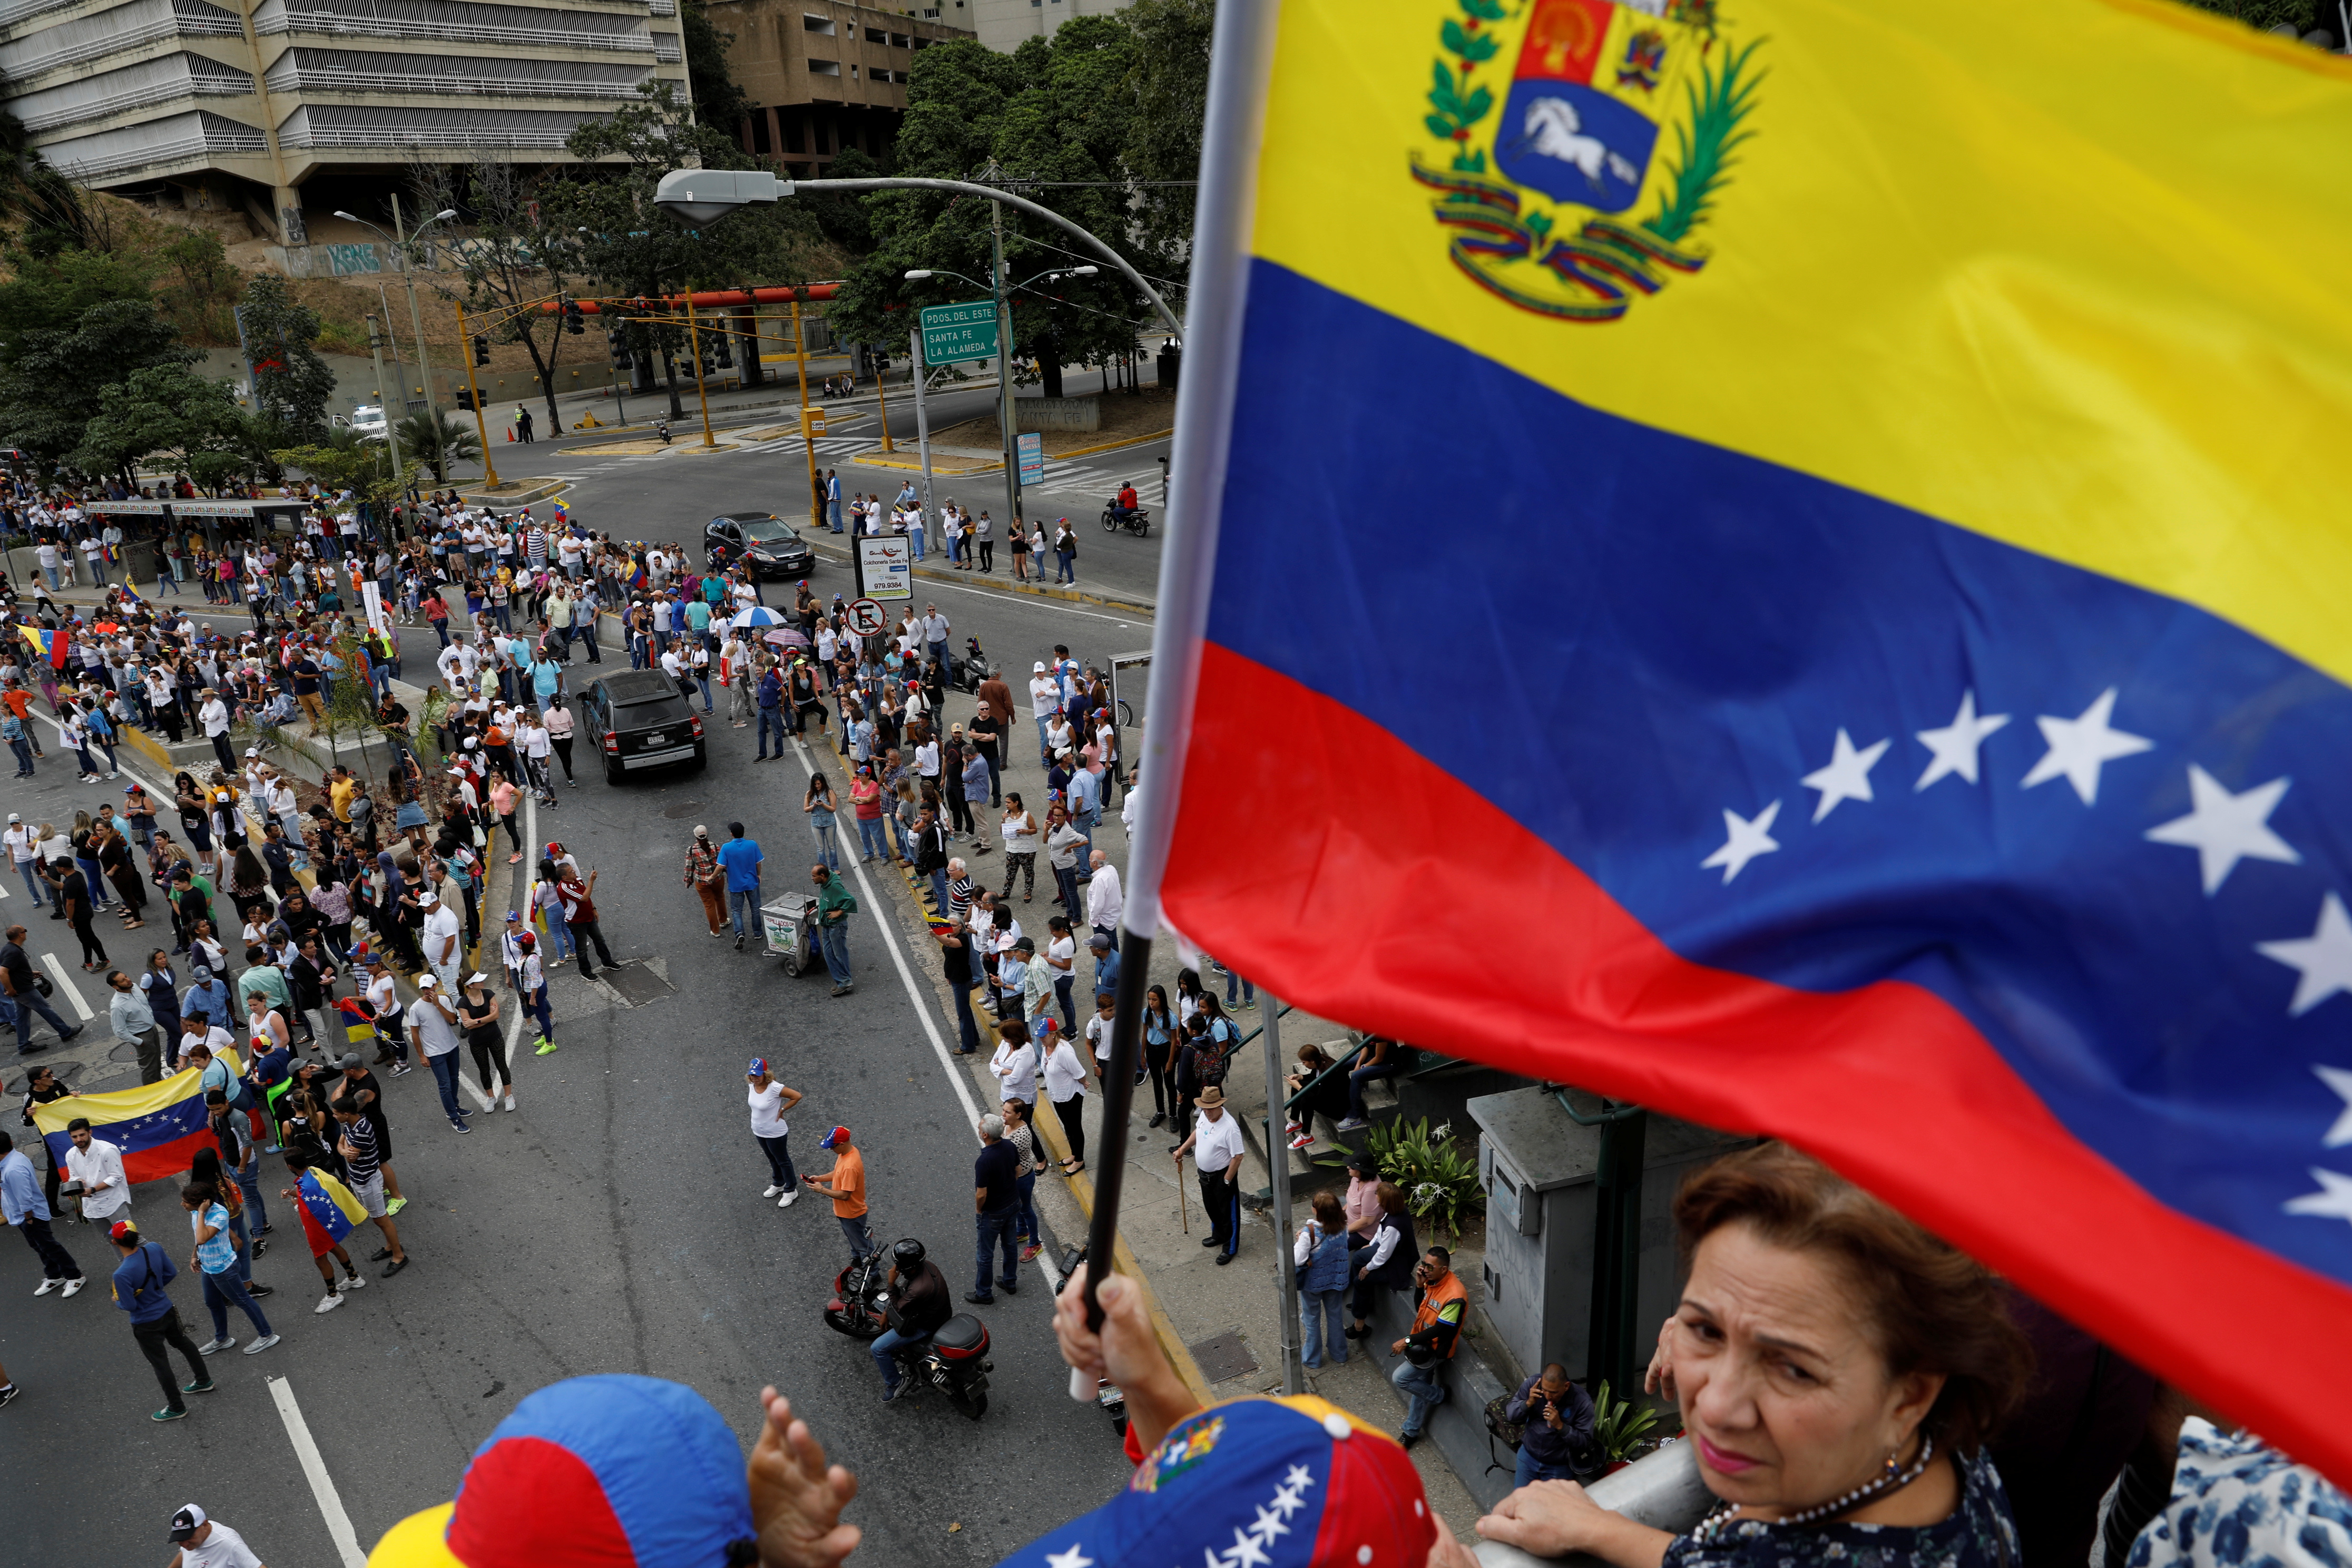 EEUU y Rusia impulsan acciones opuestas en Naciones Unidas respecto a Venezuela